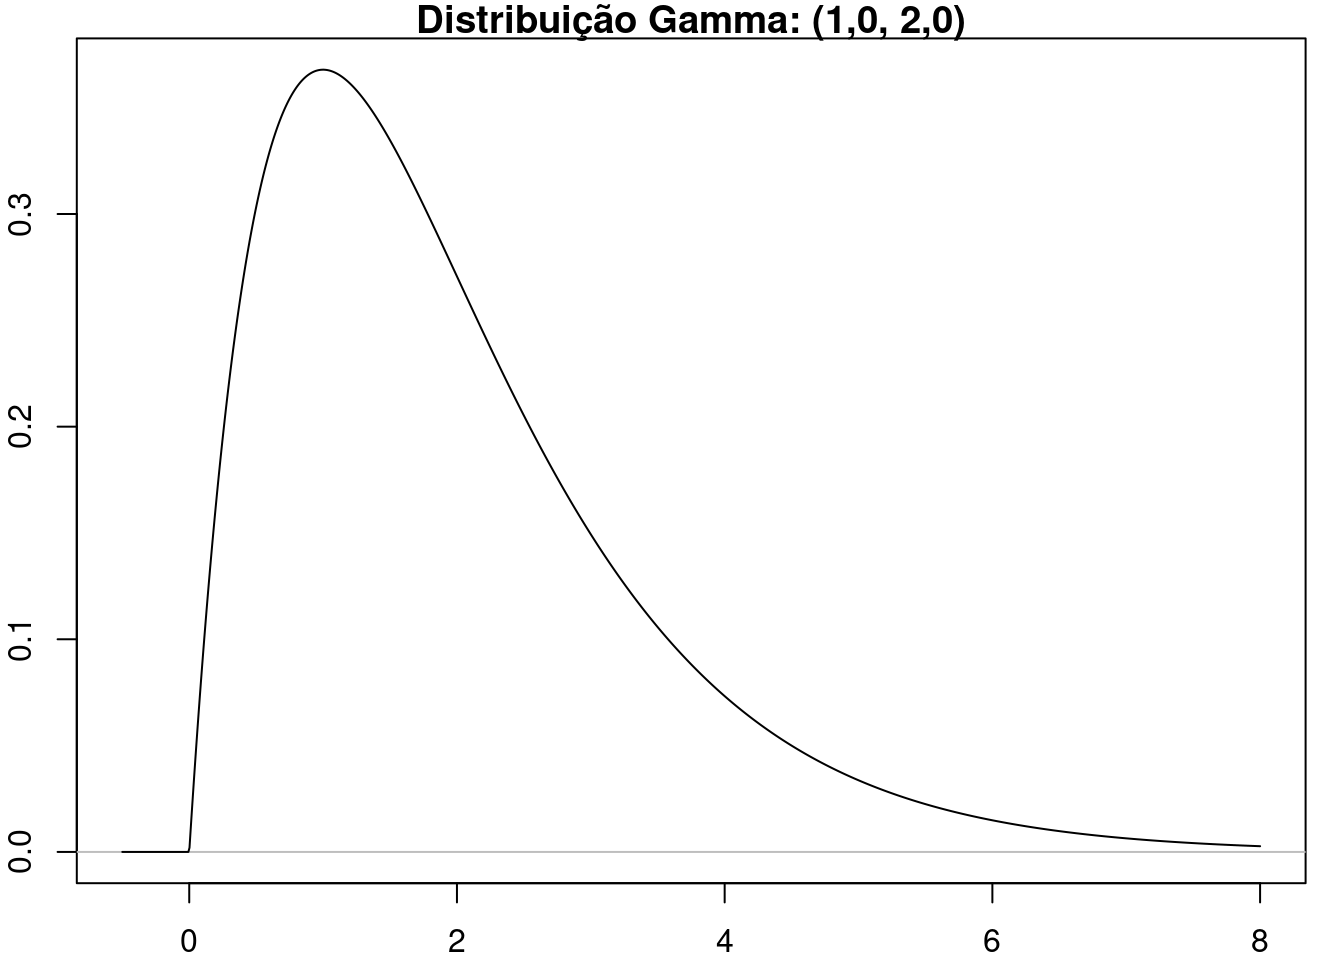 Distribuição gama com parâmetros \(\alpha\) = 1 e \(r = 2\).